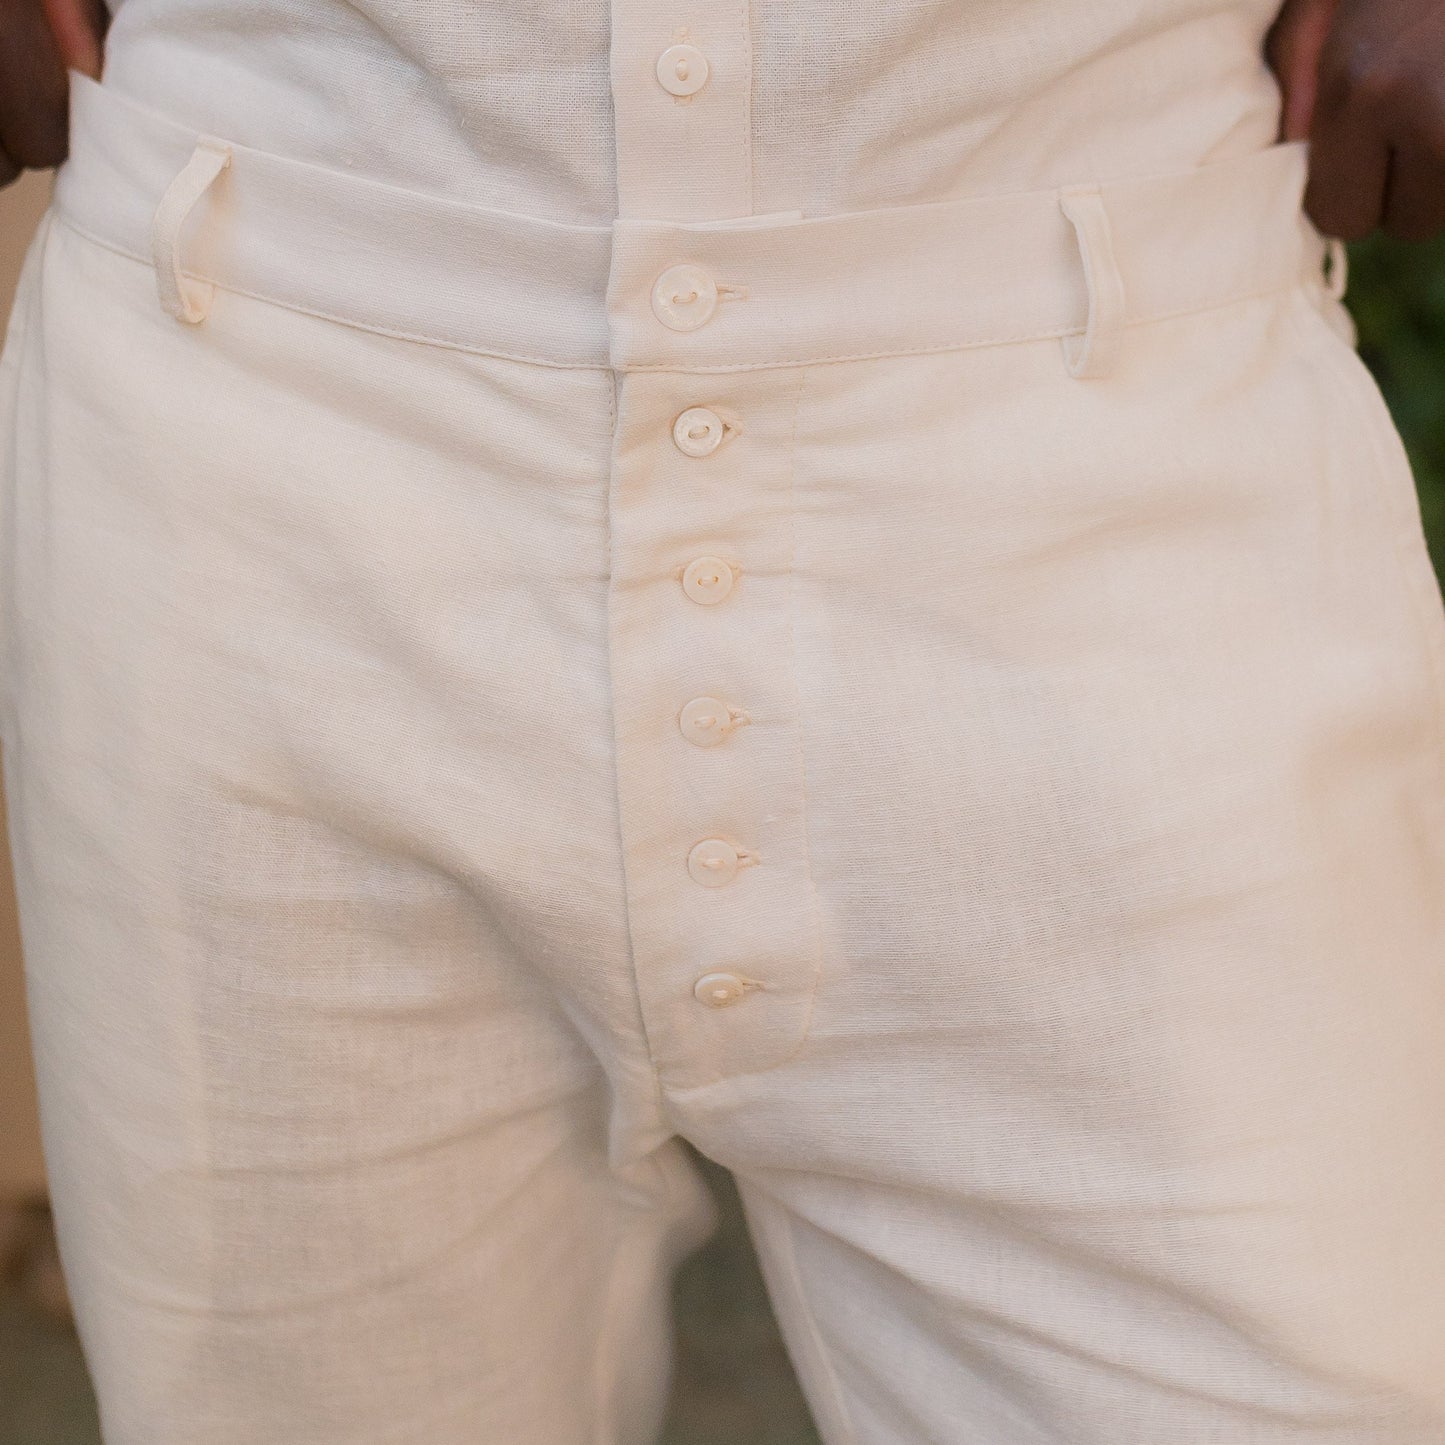 Kalahari Hemp Linen Pants in Cream